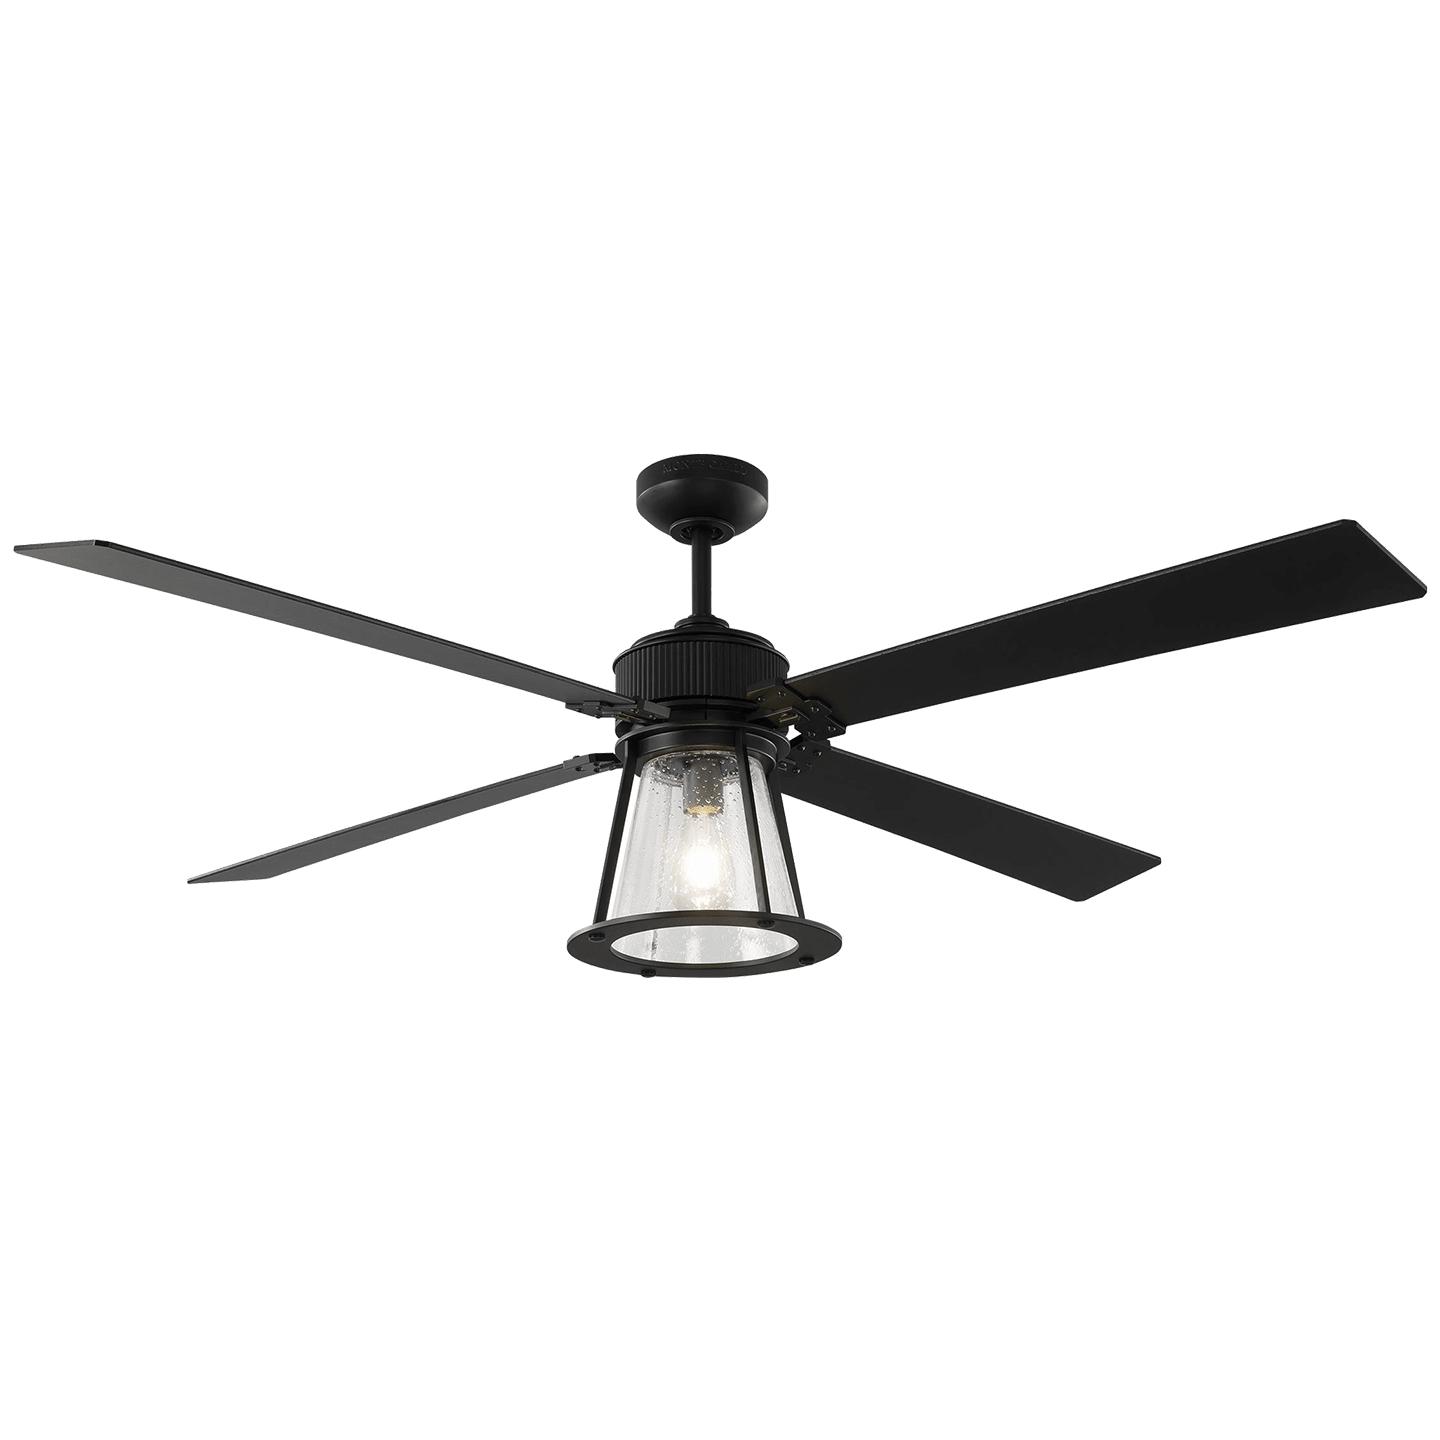 Купить Потолочный вентилятор Rockland 60" LED Ceiling Fan в интернет-магазине roooms.ru